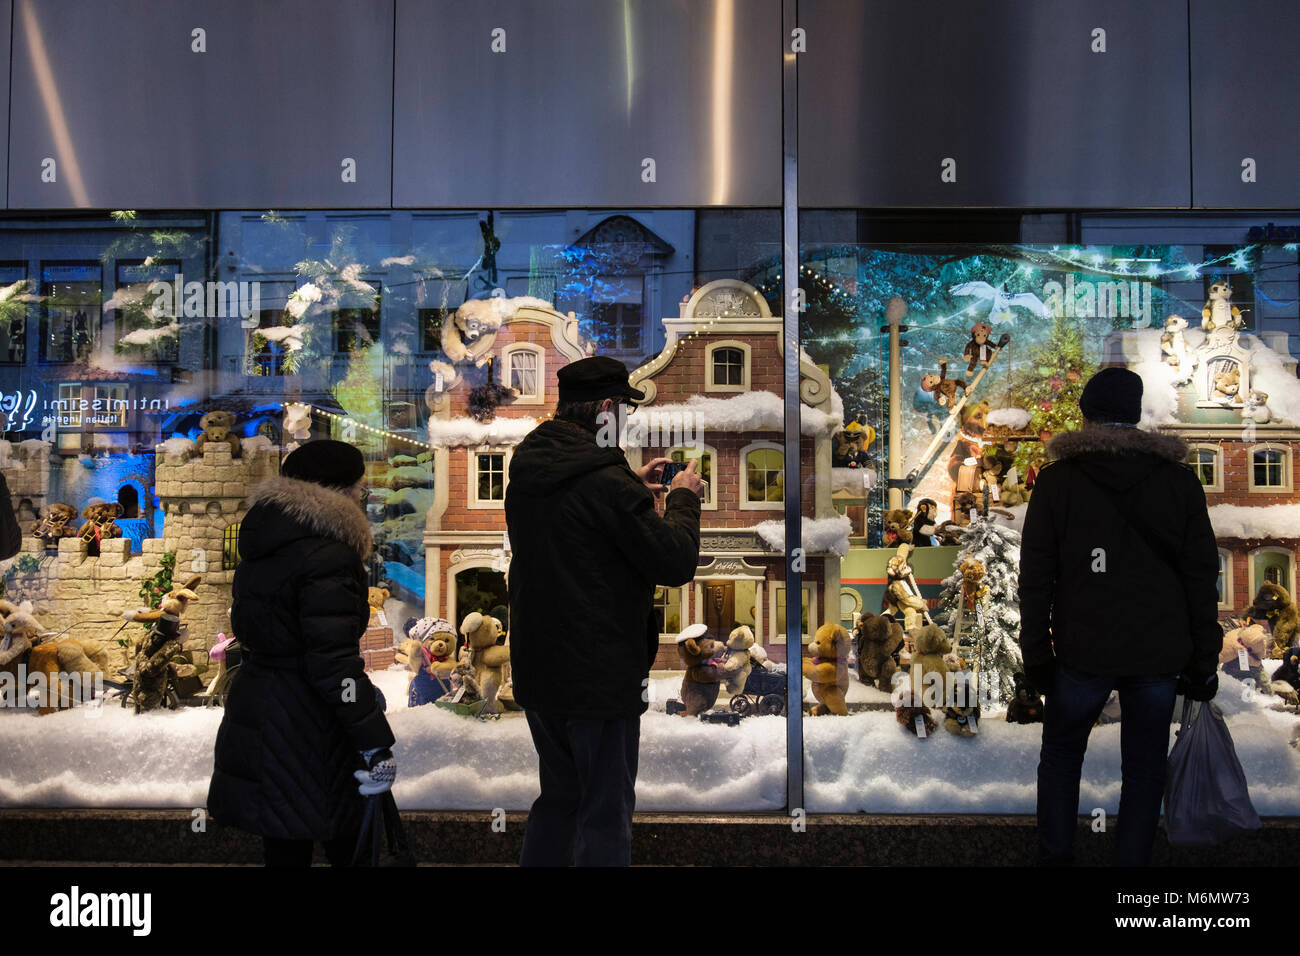 Le persone che ricercano un display di natale scena invernale nel Centro commerciale Galeria Kaufhof vetrina. Monaco di Baviera, Germania, Europa Foto Stock